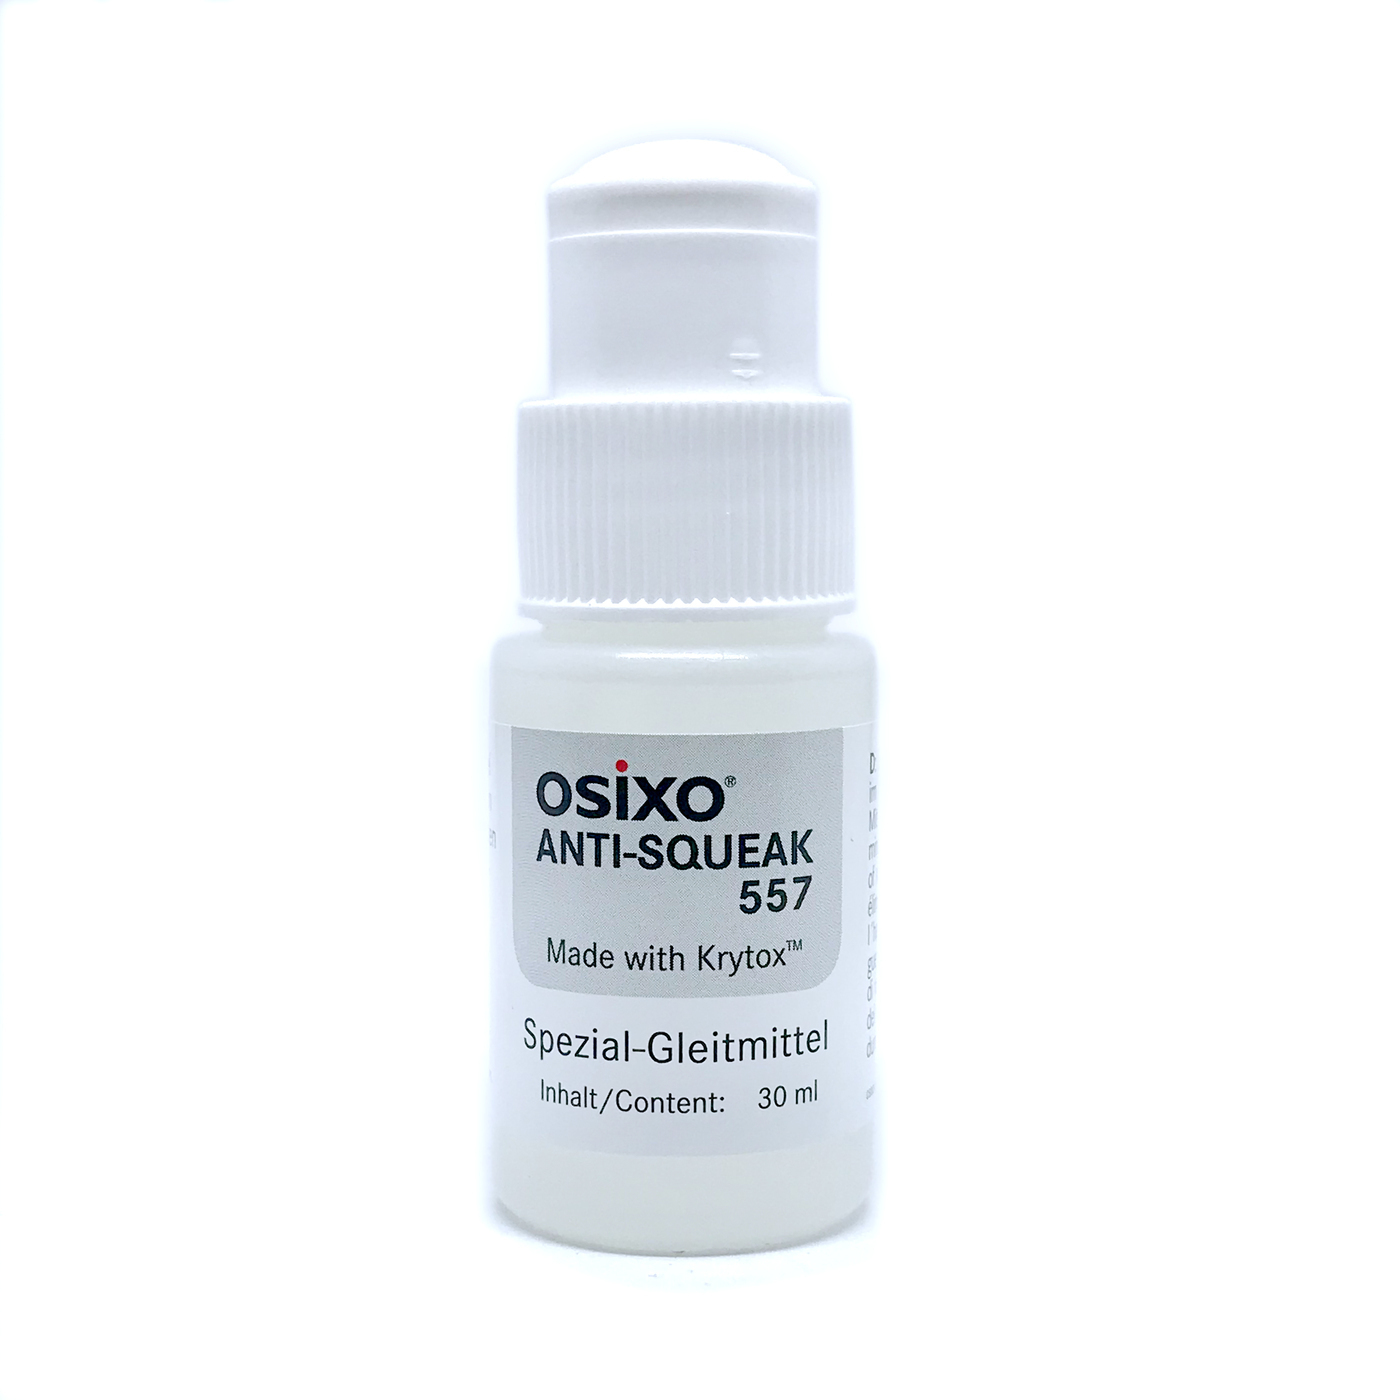 OSiXO Anti-Squeak 557 Spezial-Gleitmittel Pflegemittel mit Krytox™ 30ml in Flasche + Schwammaufträger